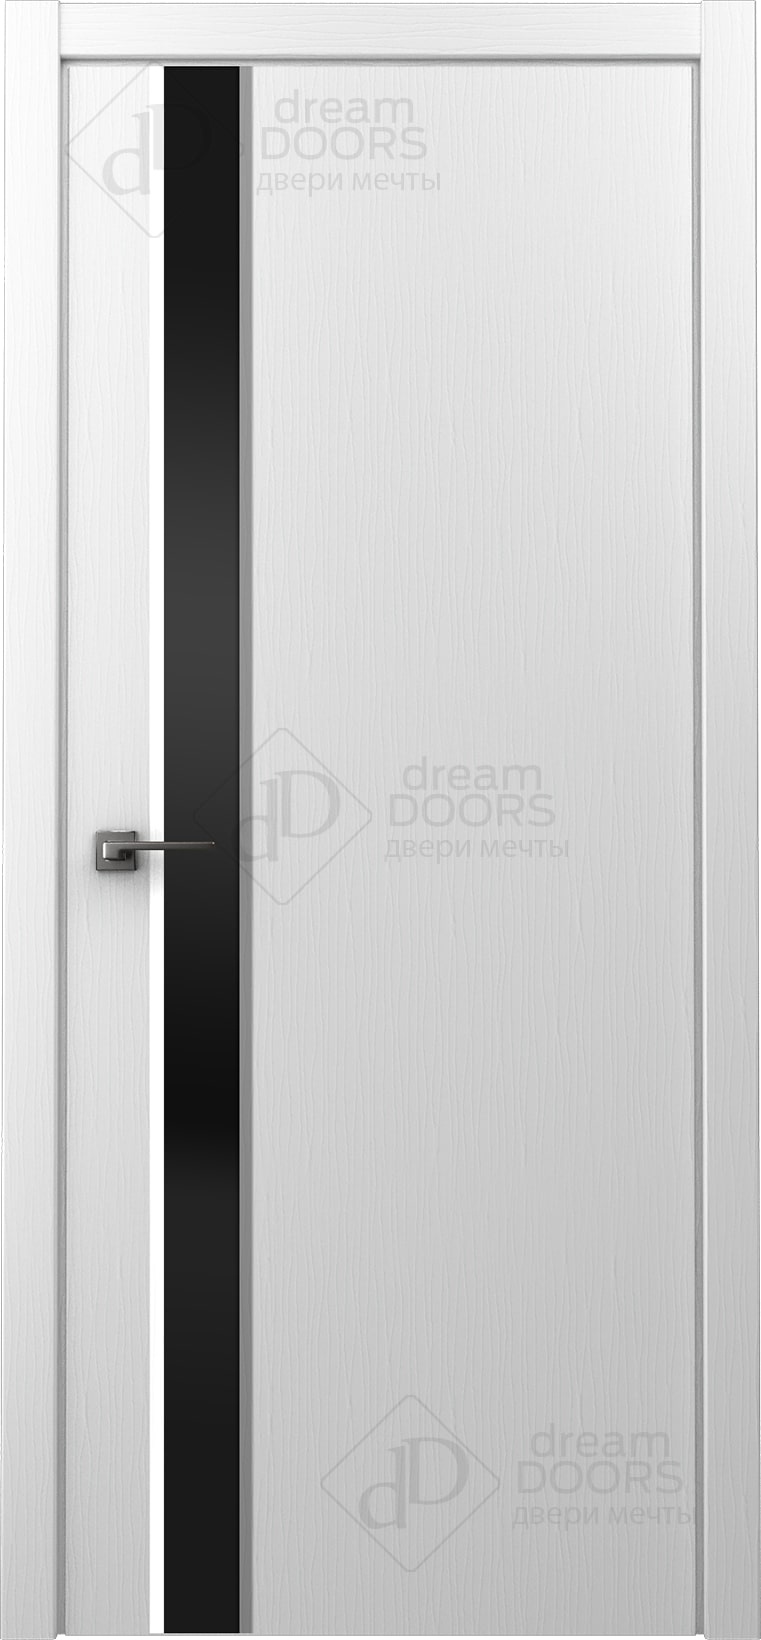 Dream Doors Межкомнатная дверь Стиль 1 узкое ПО, арт. 20069 - фото №1